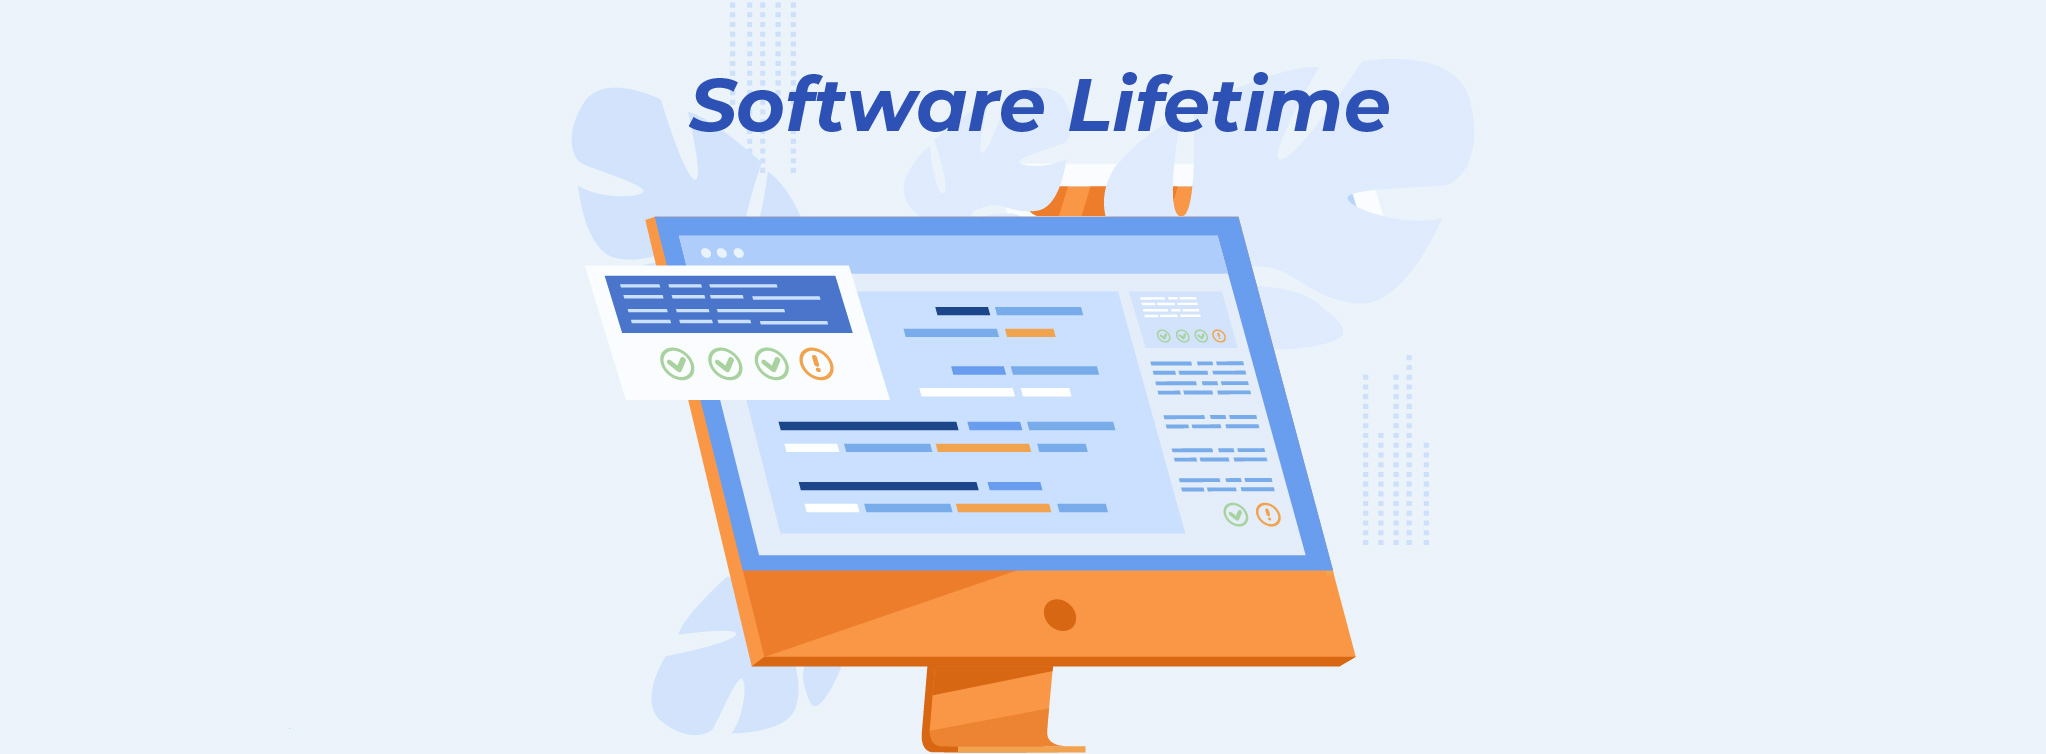 hrm system software lifetime license